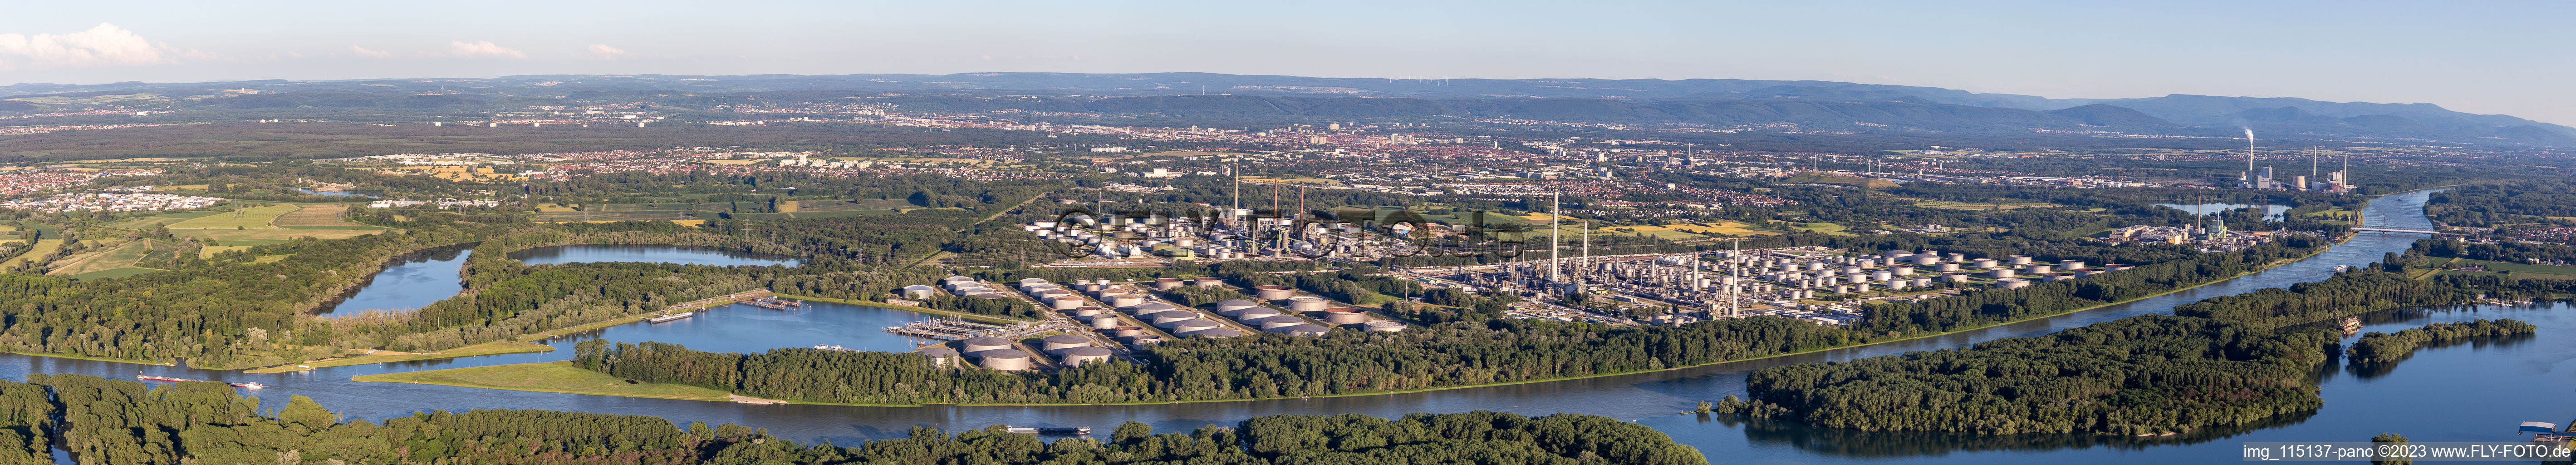 Vue aérienne de Panorama - perspective des installations de raffinage et des systèmes de canalisations chez le producteur d'huile minérale Mineralölraffinerie Oberrhein à le quartier Knielingen in Karlsruhe dans le département Bade-Wurtemberg, Allemagne